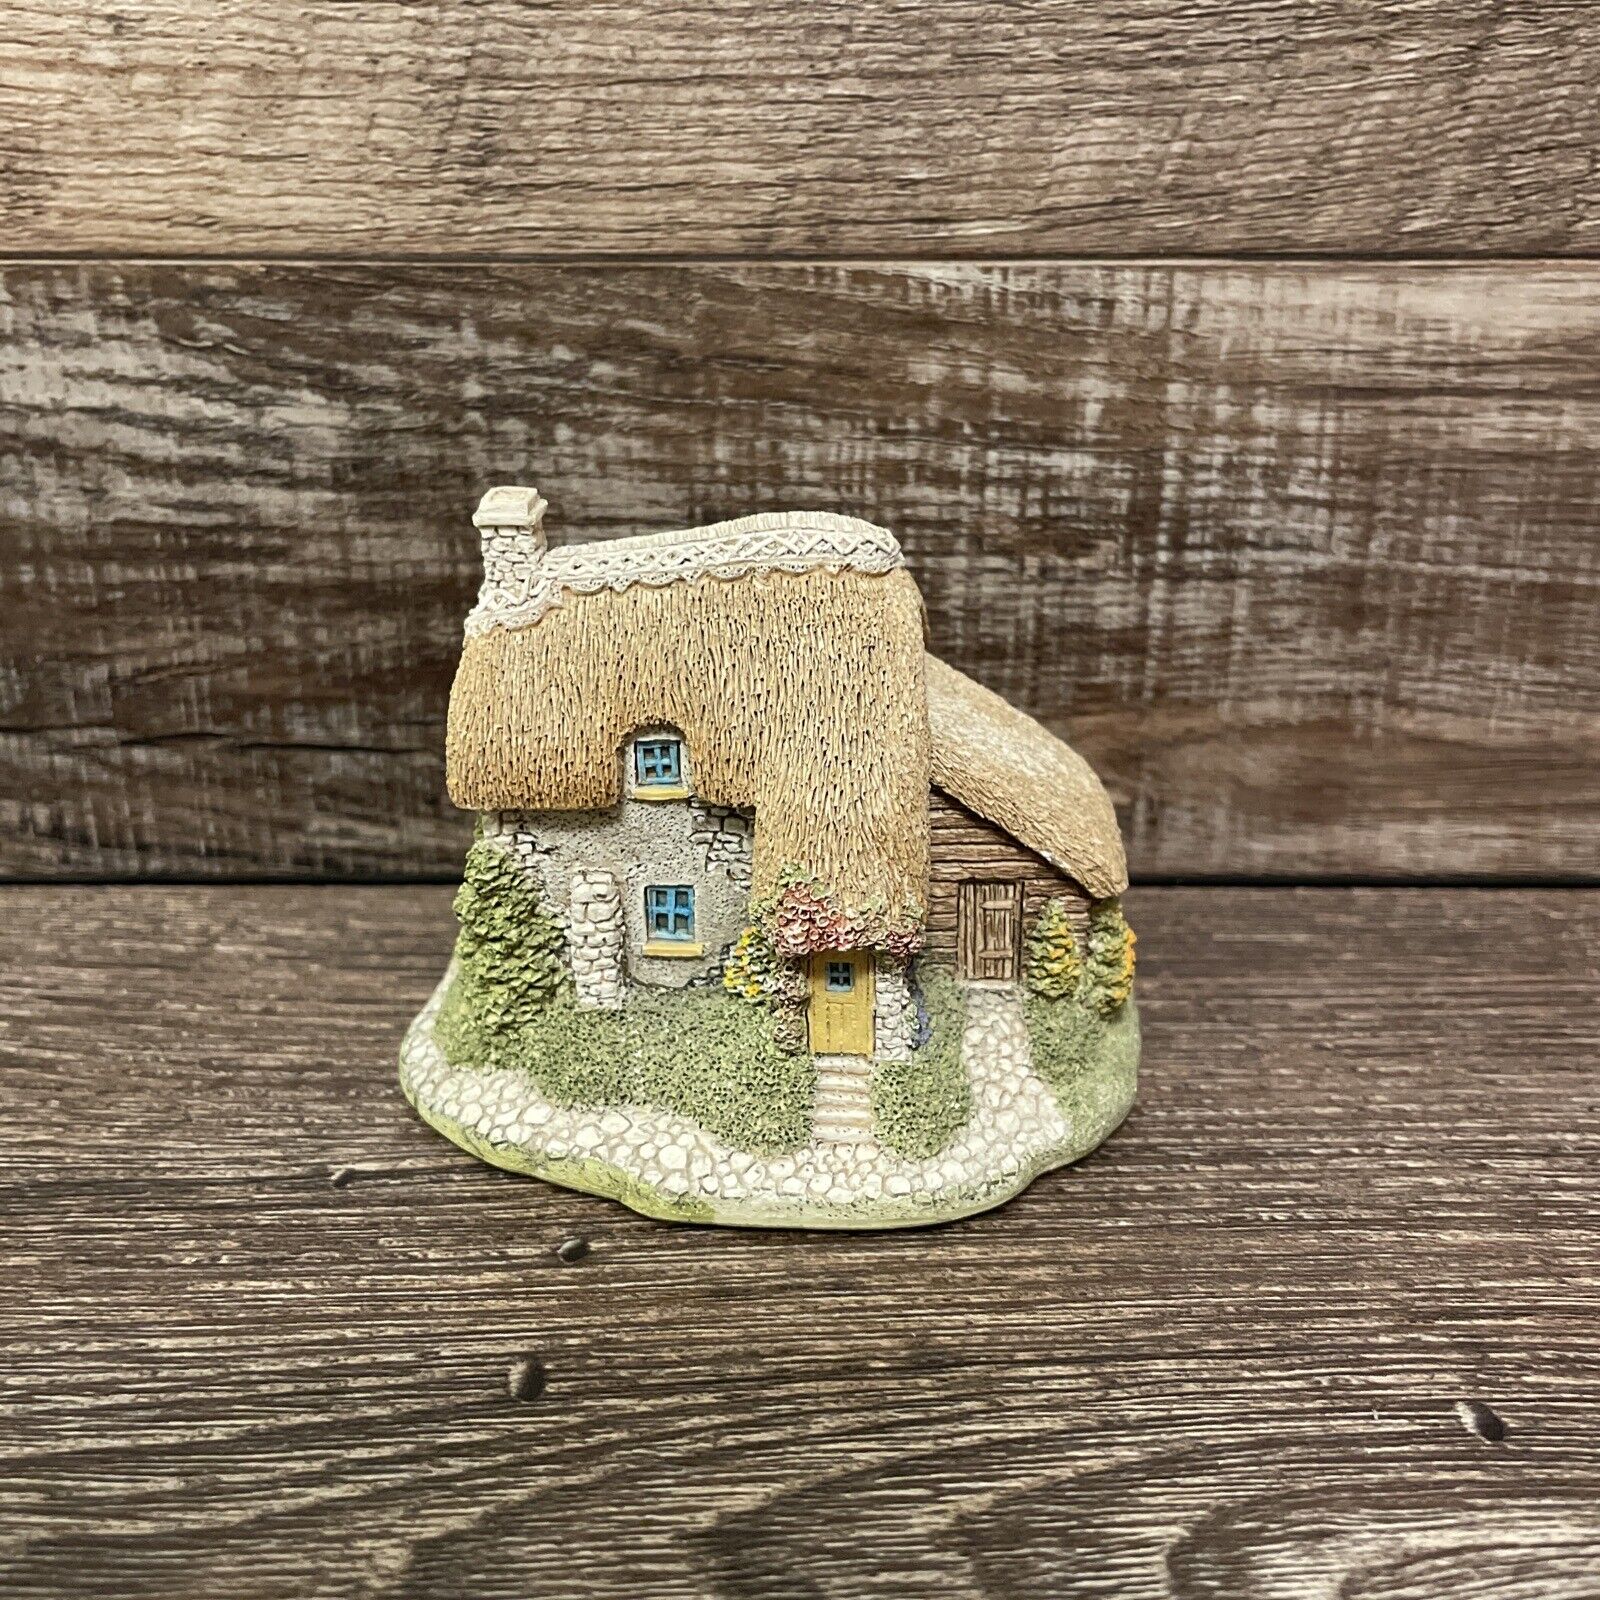 Lilliput Lane Puddlebrook Miniature Cottage Handmade In Cumbria United Kingdom